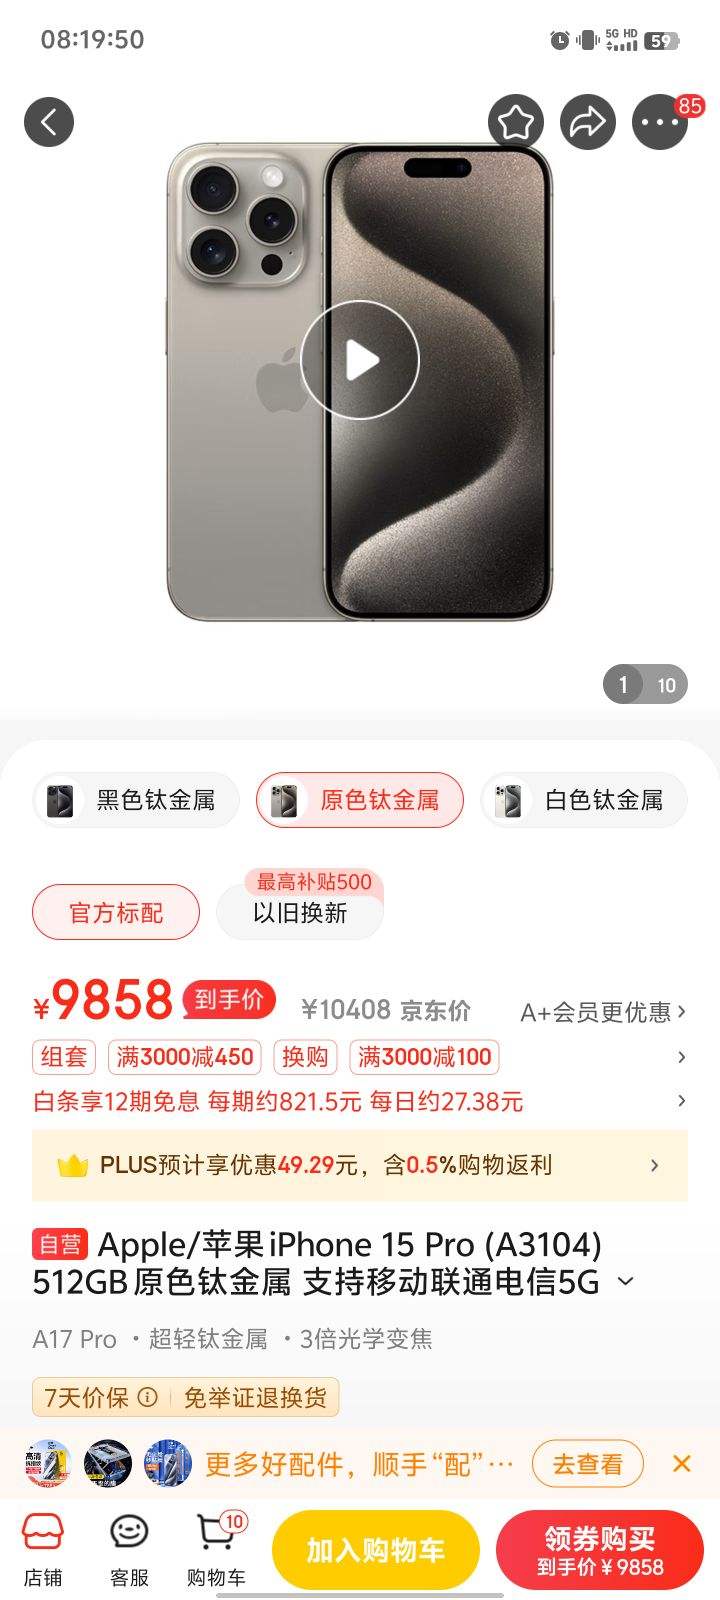 Apple/苹果 iPhone 15 Pro (A3104) 512GB 原色钛金属 支持移动联通电信5G 双卡双待手机【快充套装】-全利兔